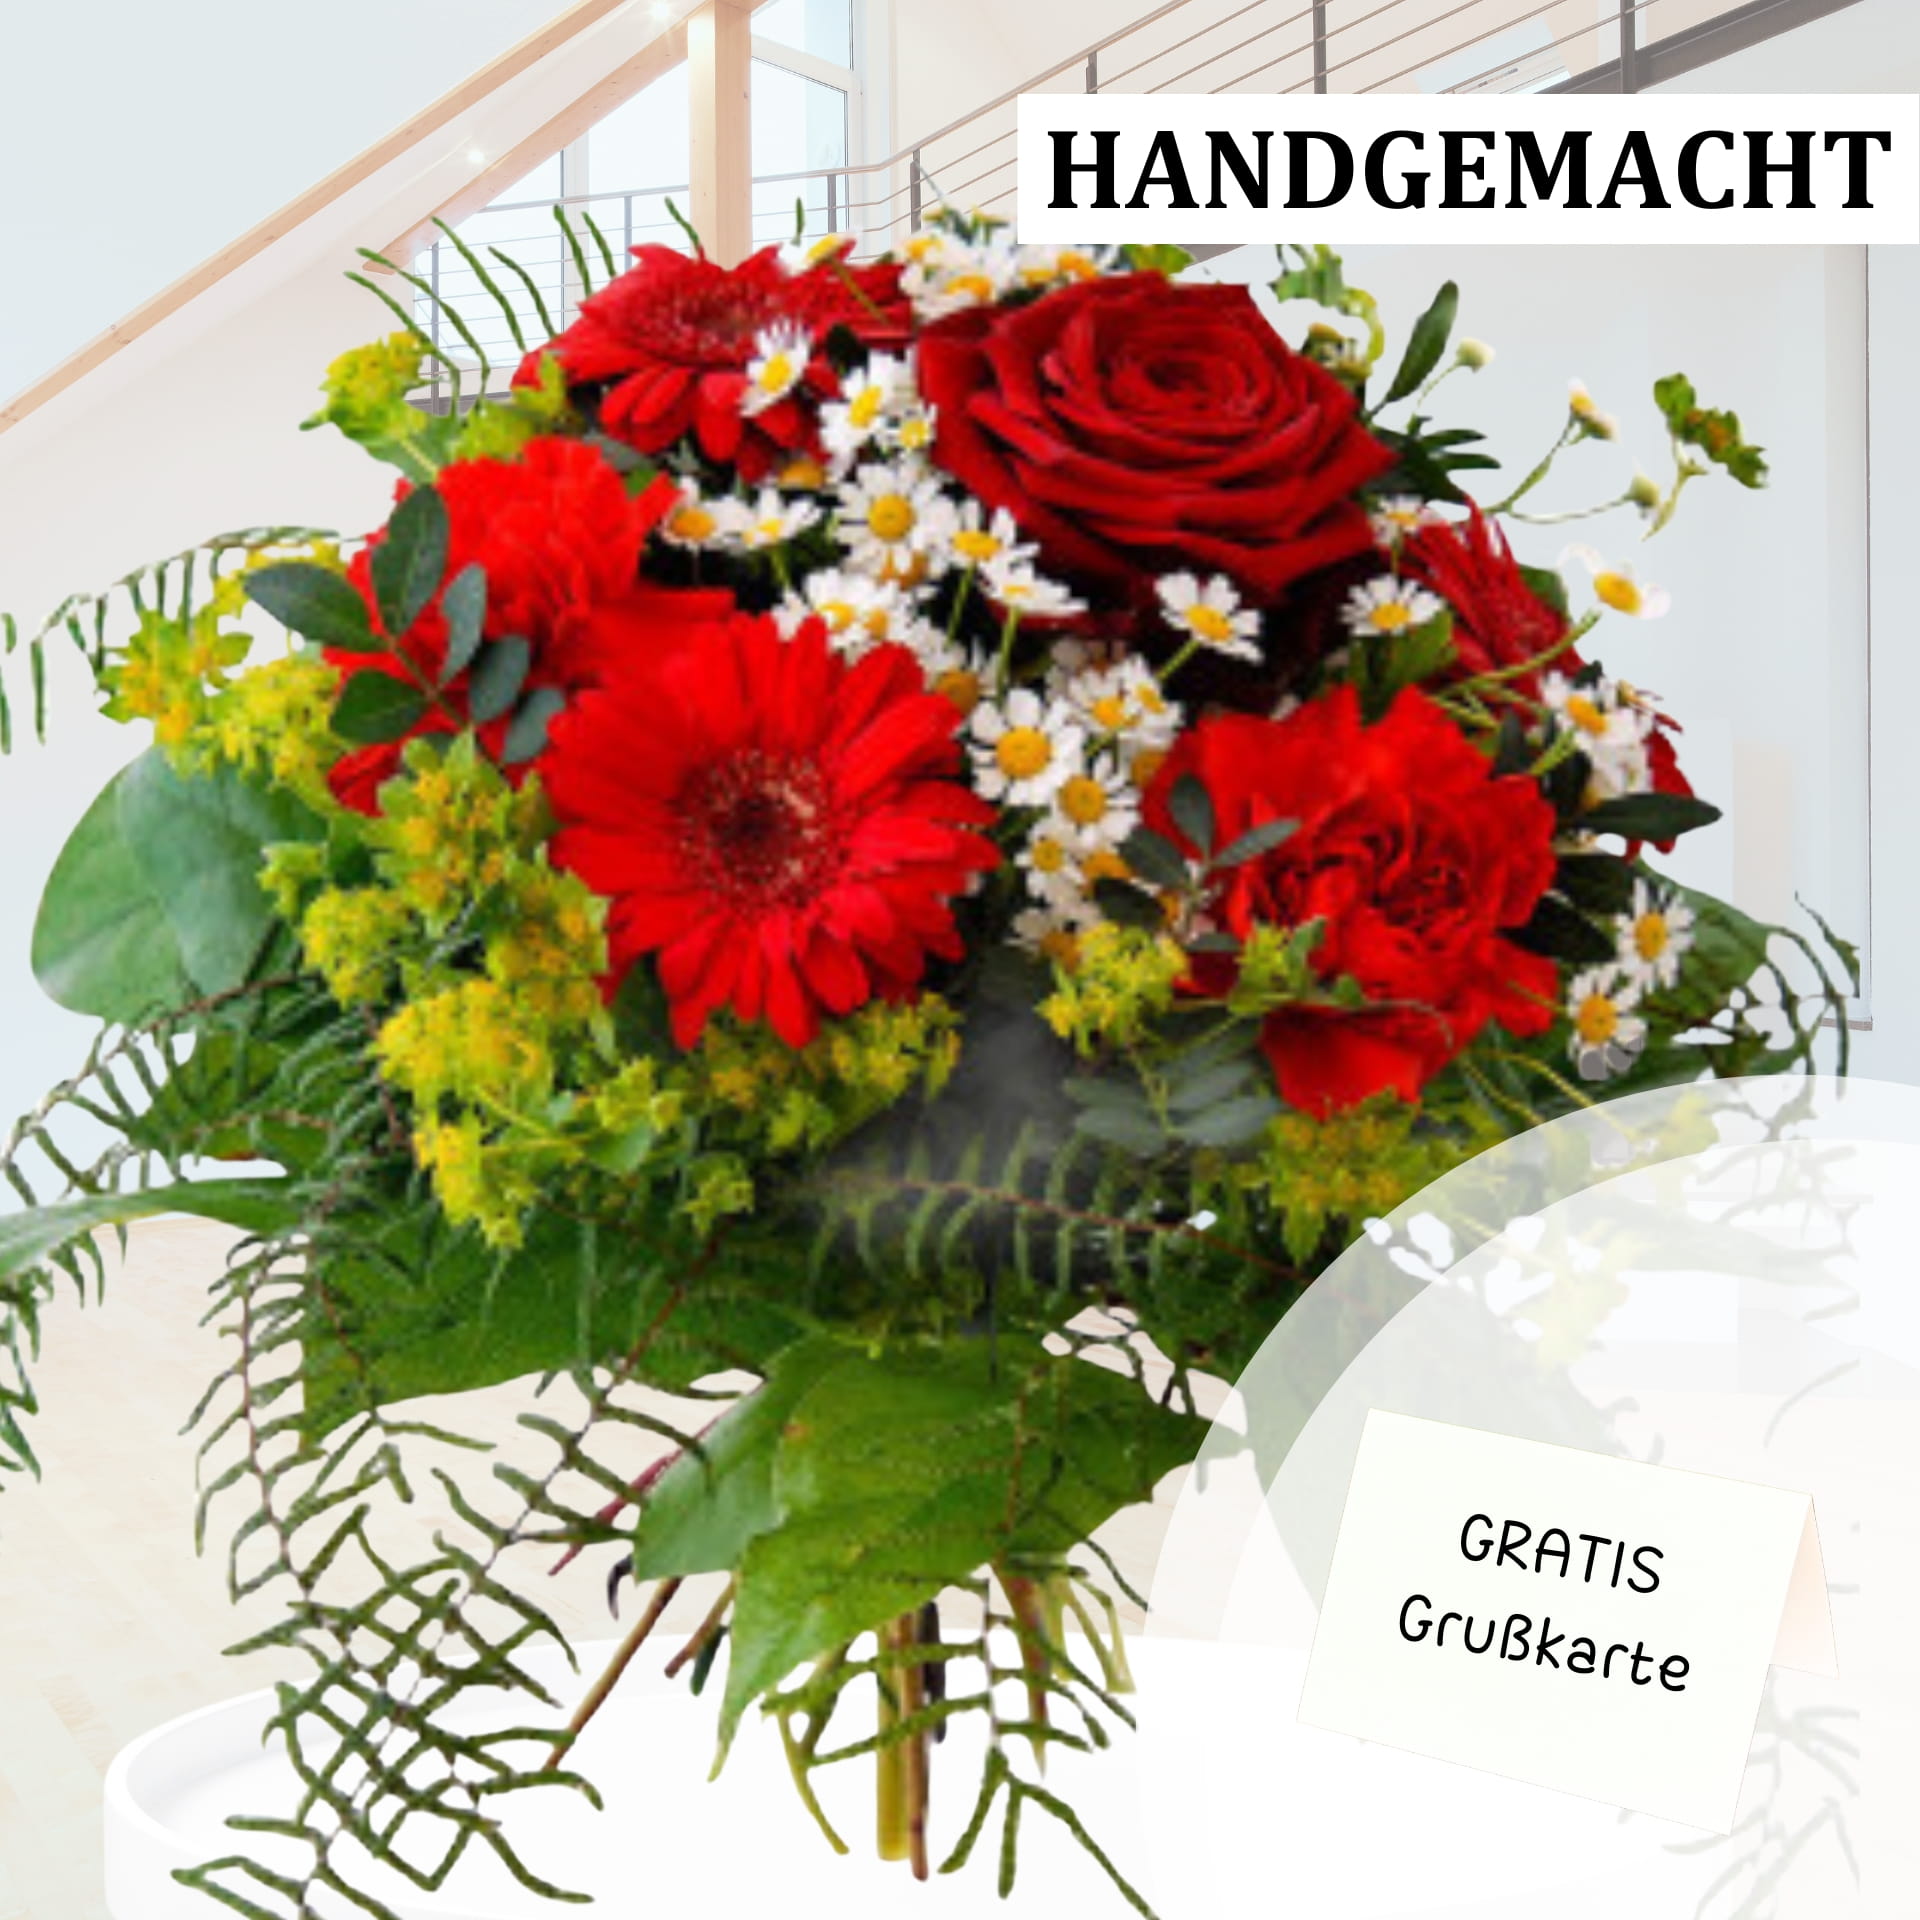  Handgefertigter Blumenstrauß mit leuchtend roten Rosen, roten Gerbera und zarten weißen Blüten, eingerahmt von grünen Blättern in einem modernen Interieur.